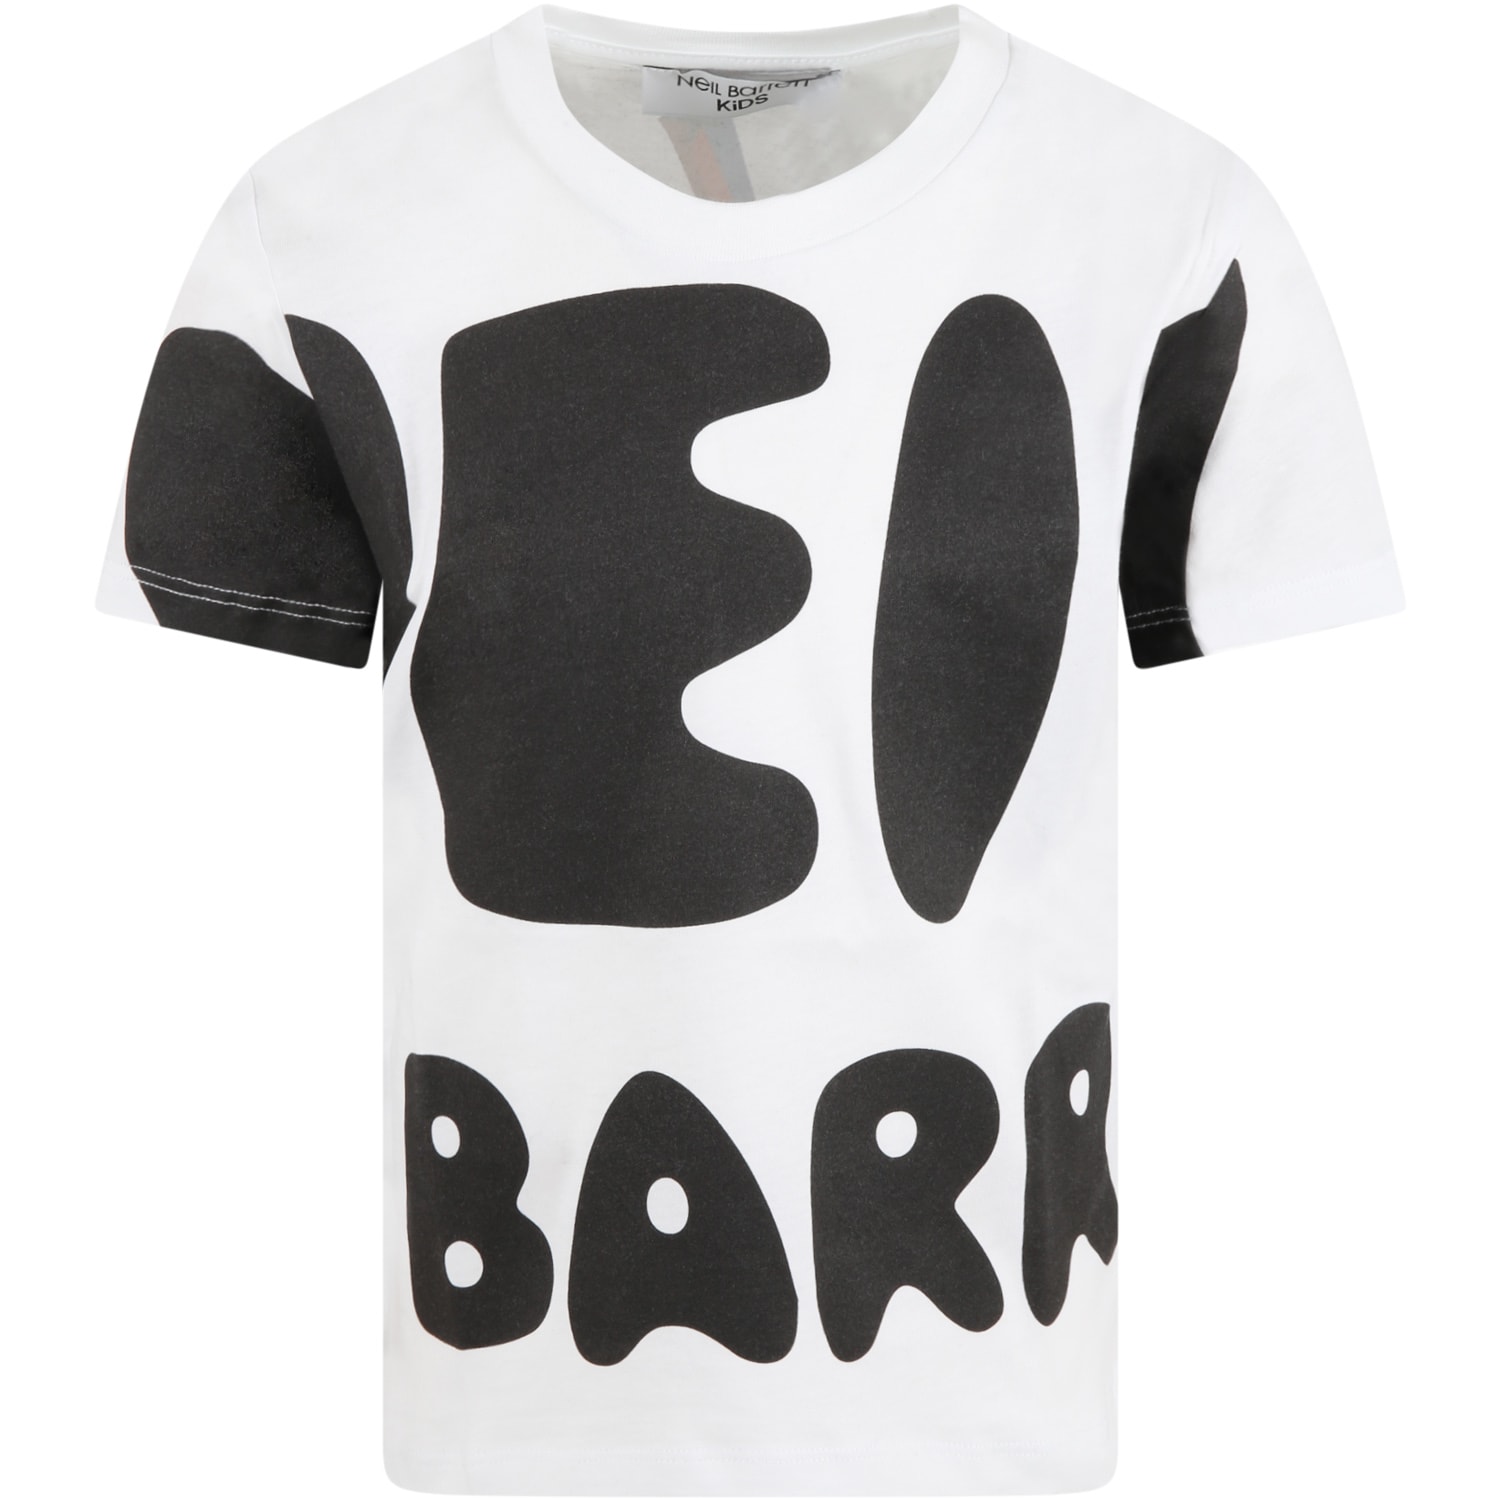 Neil Barrett White T-shirt For Boy With Logo